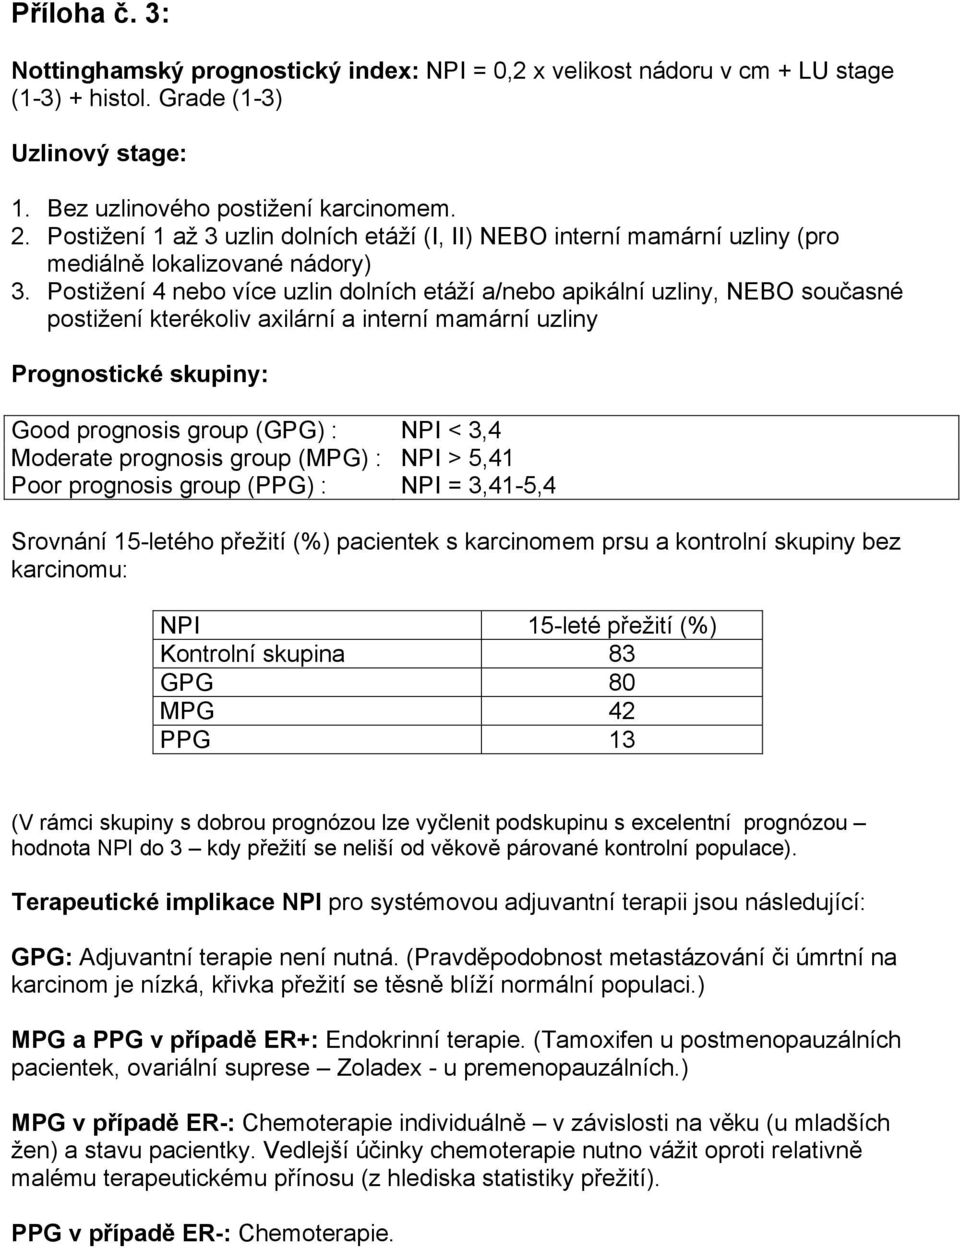 Postižení 4 nebo více uzlin dolních etáží a/nebo apikální uzliny, NEBO současné postižení kterékoliv axilární a interní mamární uzliny Prognostické skupiny: Good prognosis group (GPG) : NPI < 3,4